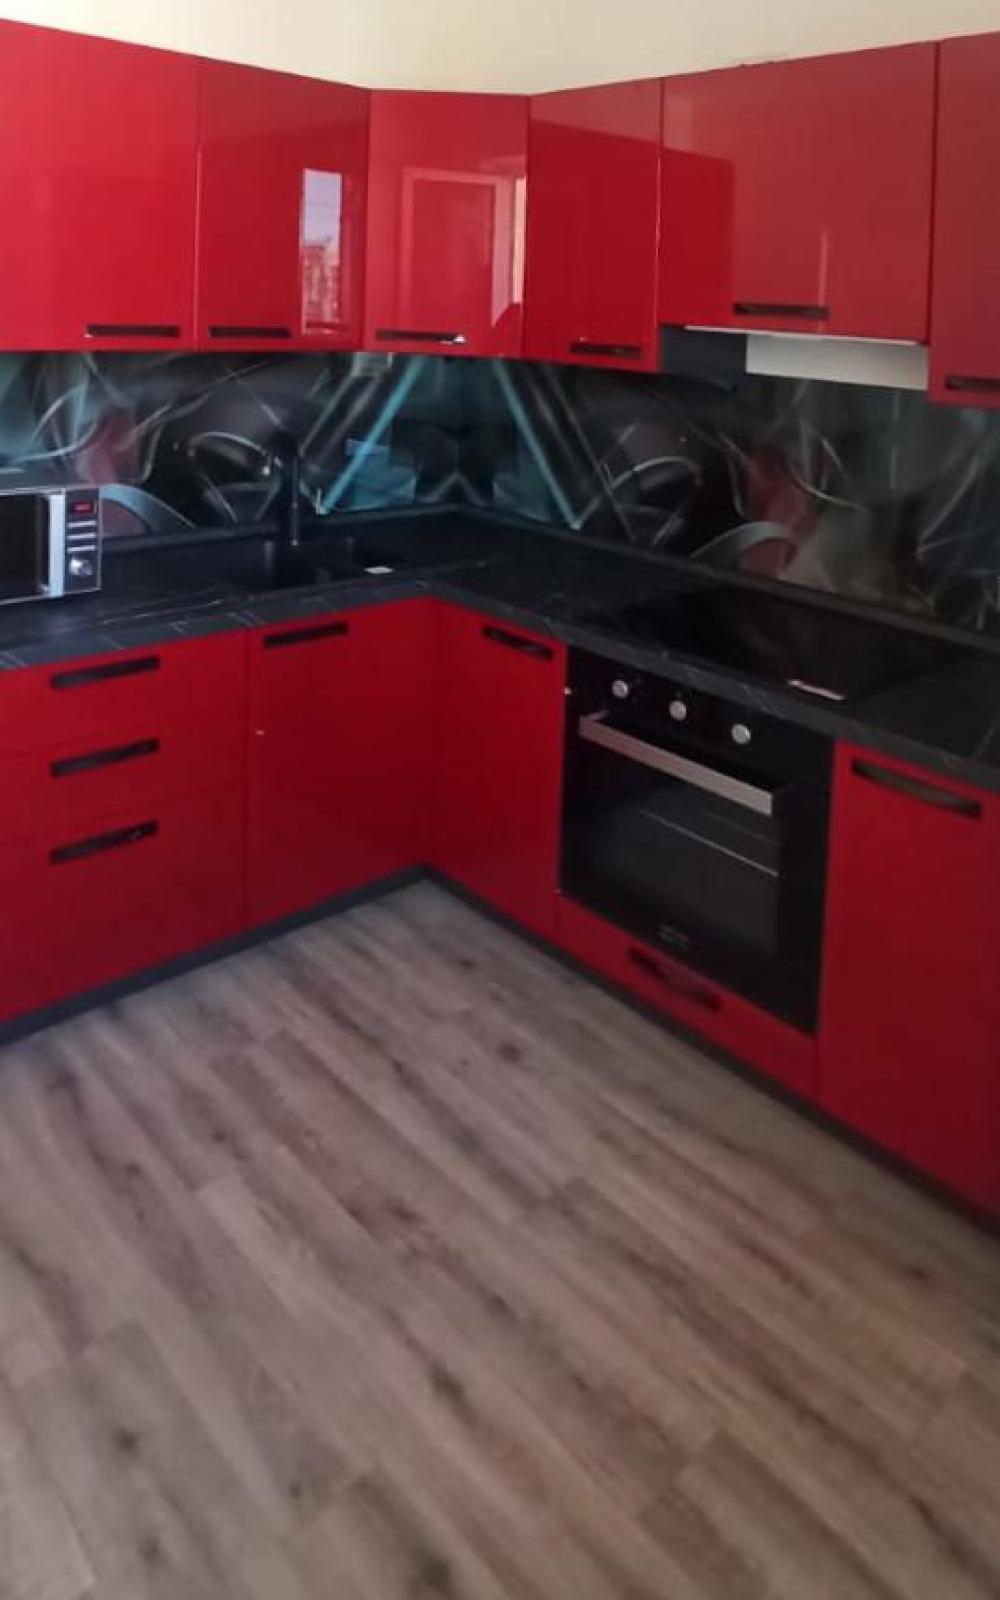 Бордовая кухня: какие элементы кухни выполнить в бордовом цвете, реальные фото примеры